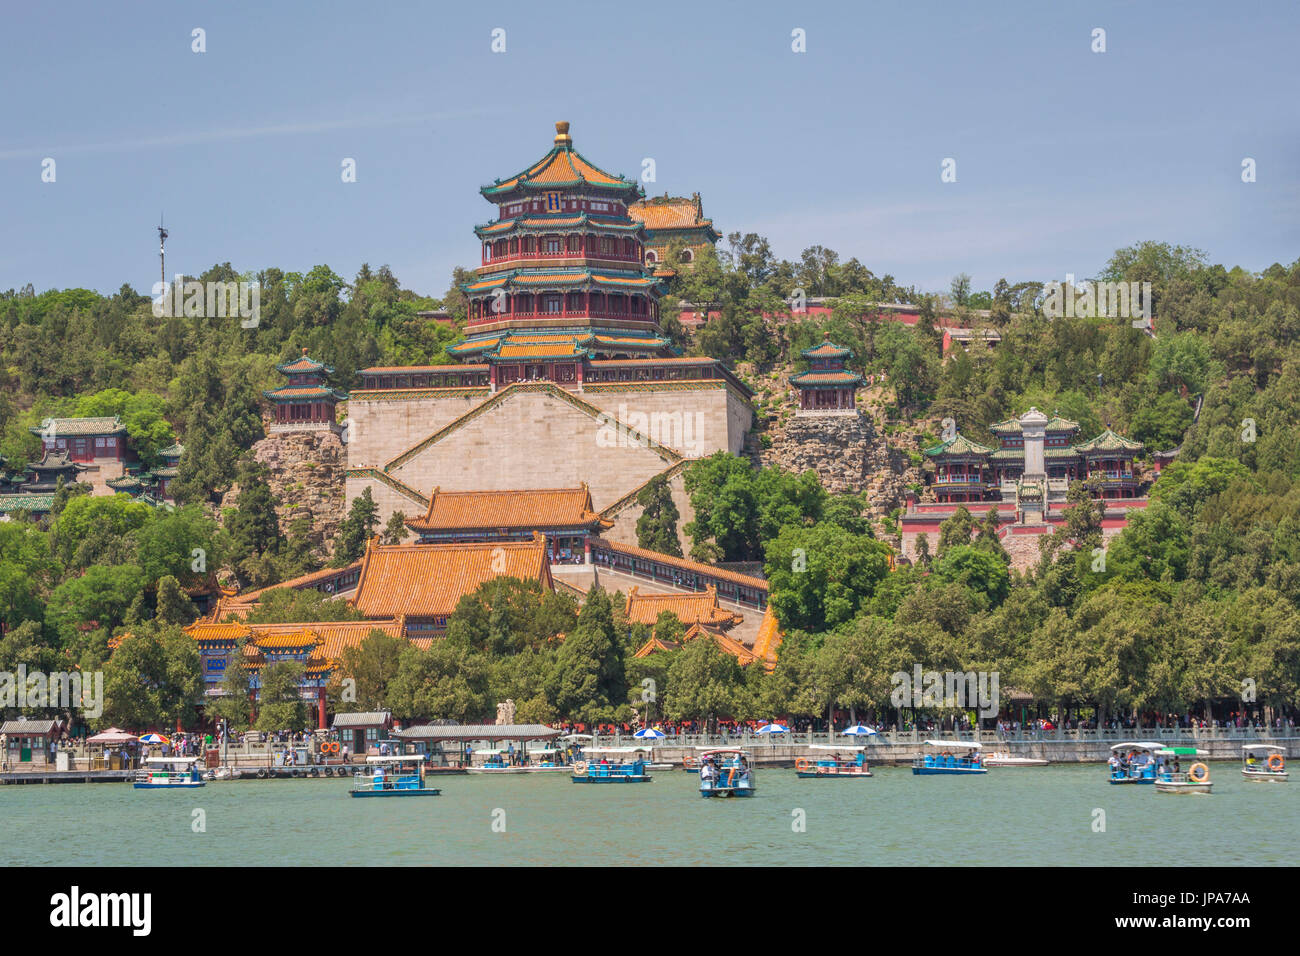 China, Beijing City, The Summer Palace, Longevity Hill, Buddhist Fragance Pavilion, Kunming Lake Stock Photo